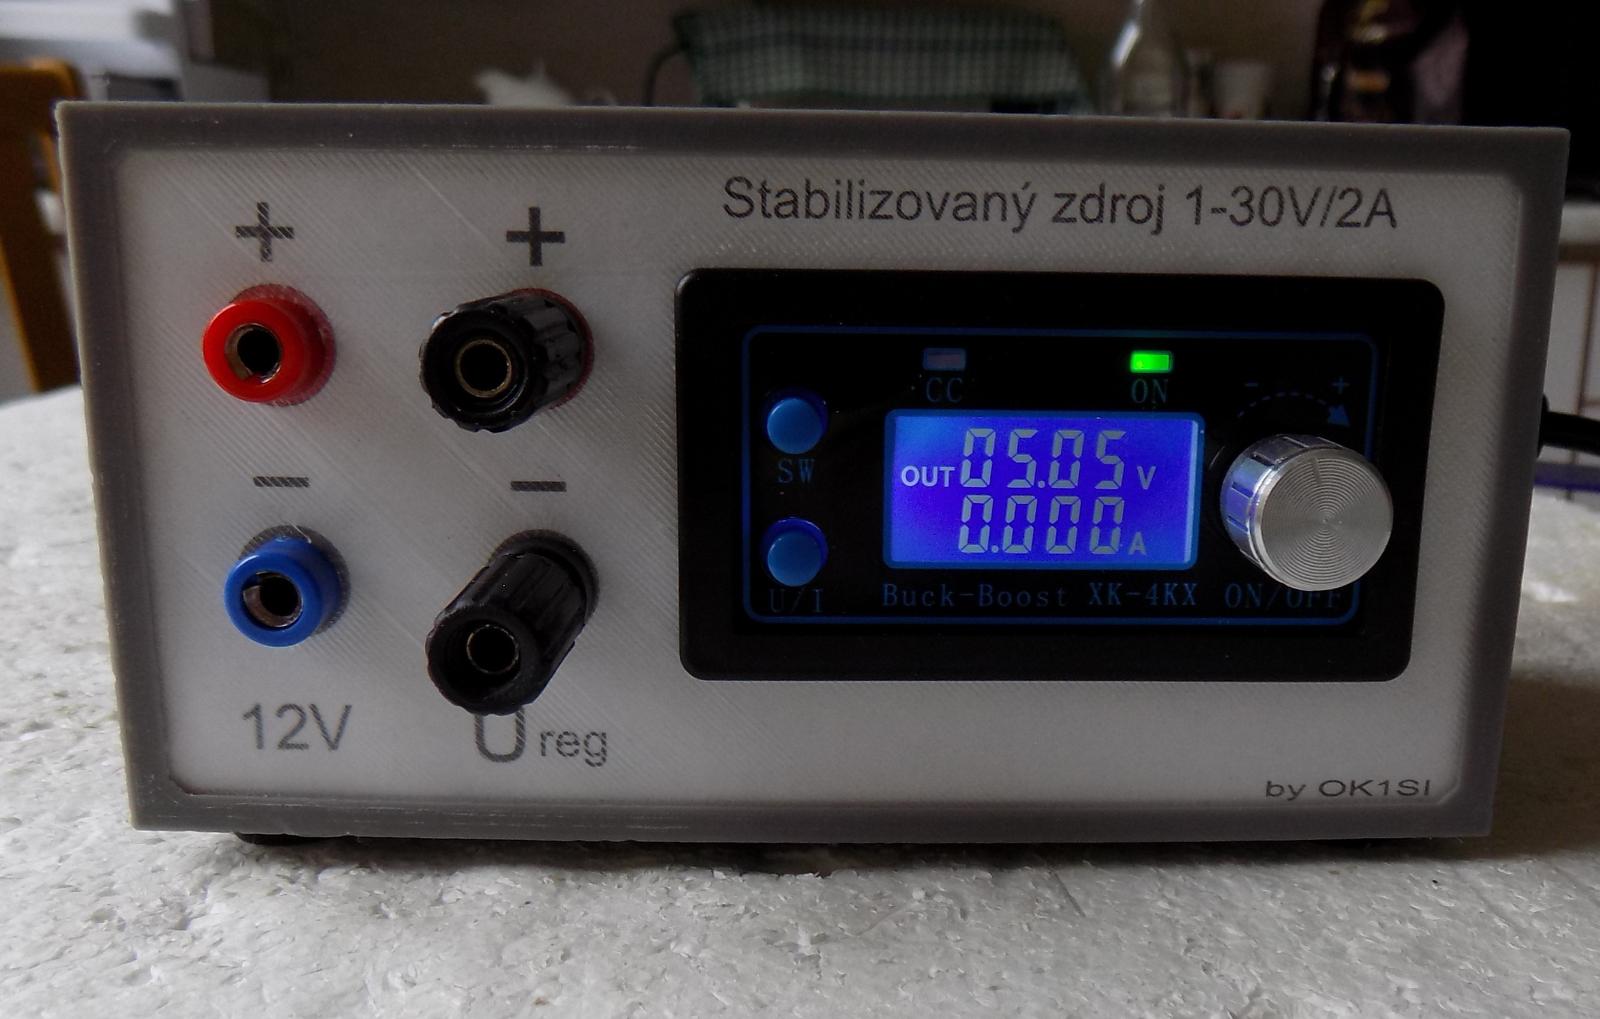 Stabilizovaný zdroj 1-30V s modulom XK-4KX - Elektro